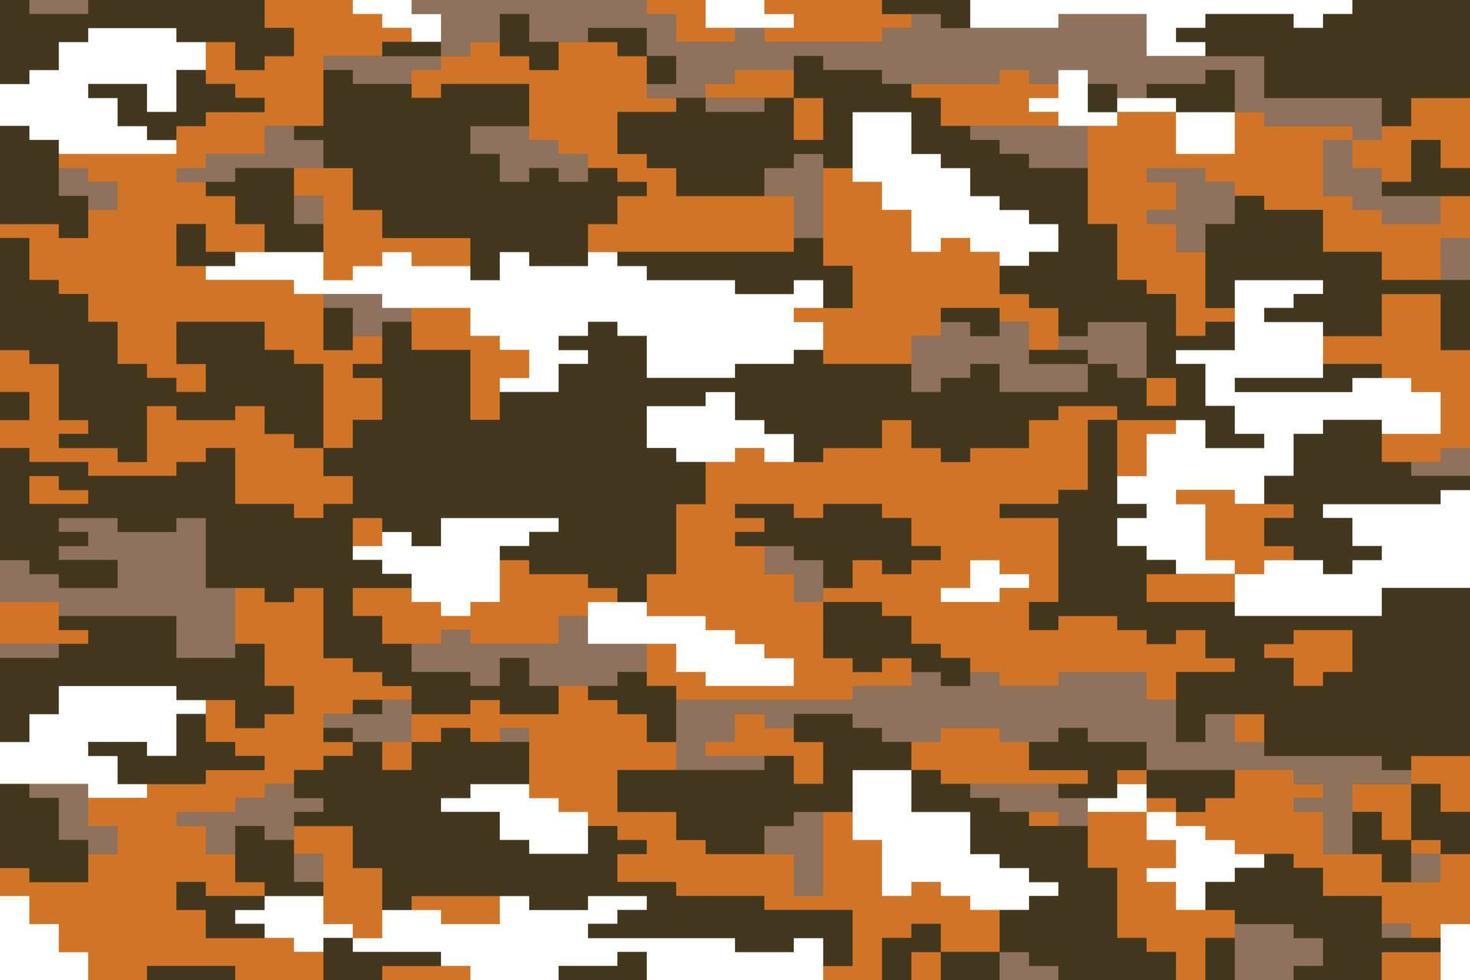 patrón abstracto de camuflaje marrón y naranja. textura moderna de camuflaje de píxeles para el ejército y tela de caza e impresión de moda. fondo vectorial en estilo militar vector